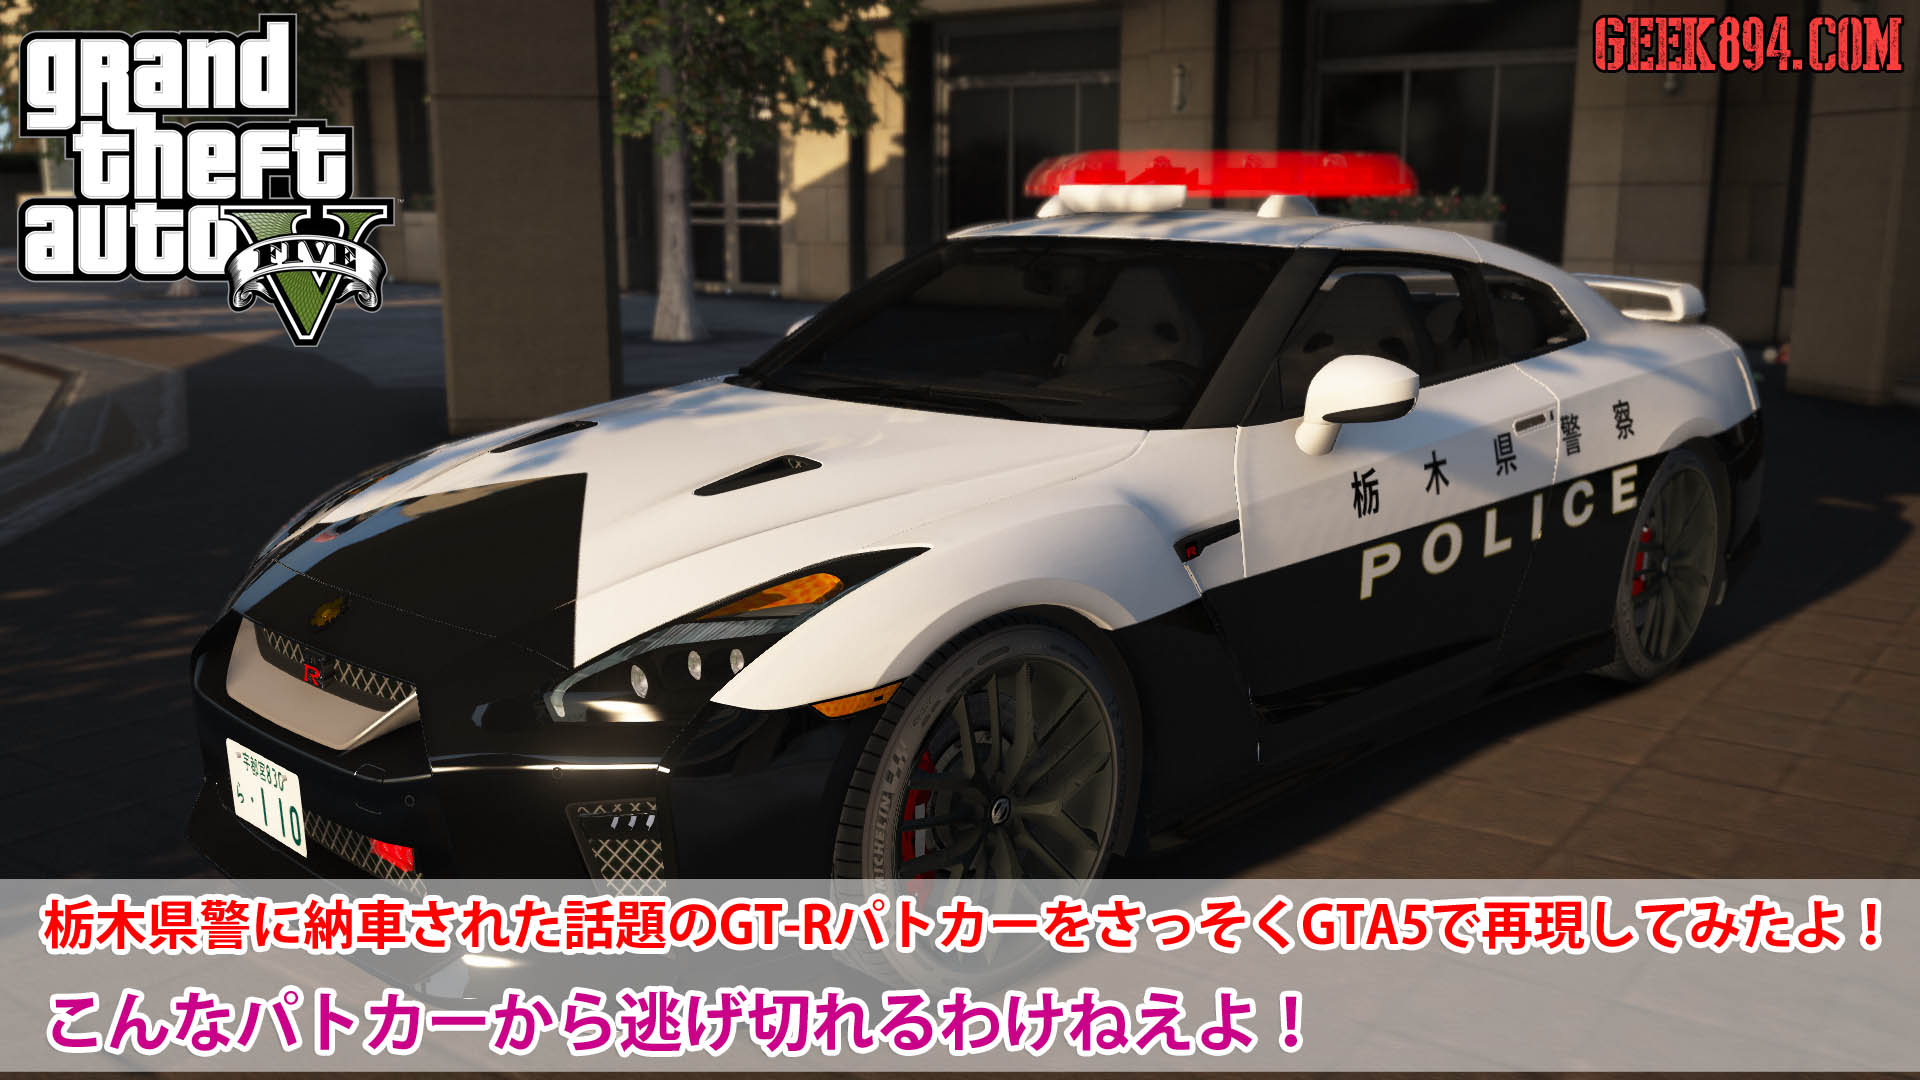 栃木県警に納車された話題のgt Rパトカーをさっそくgta5で再現してみたよ こんなパトカーから逃げ切れるわけねえよ Geek4 Com